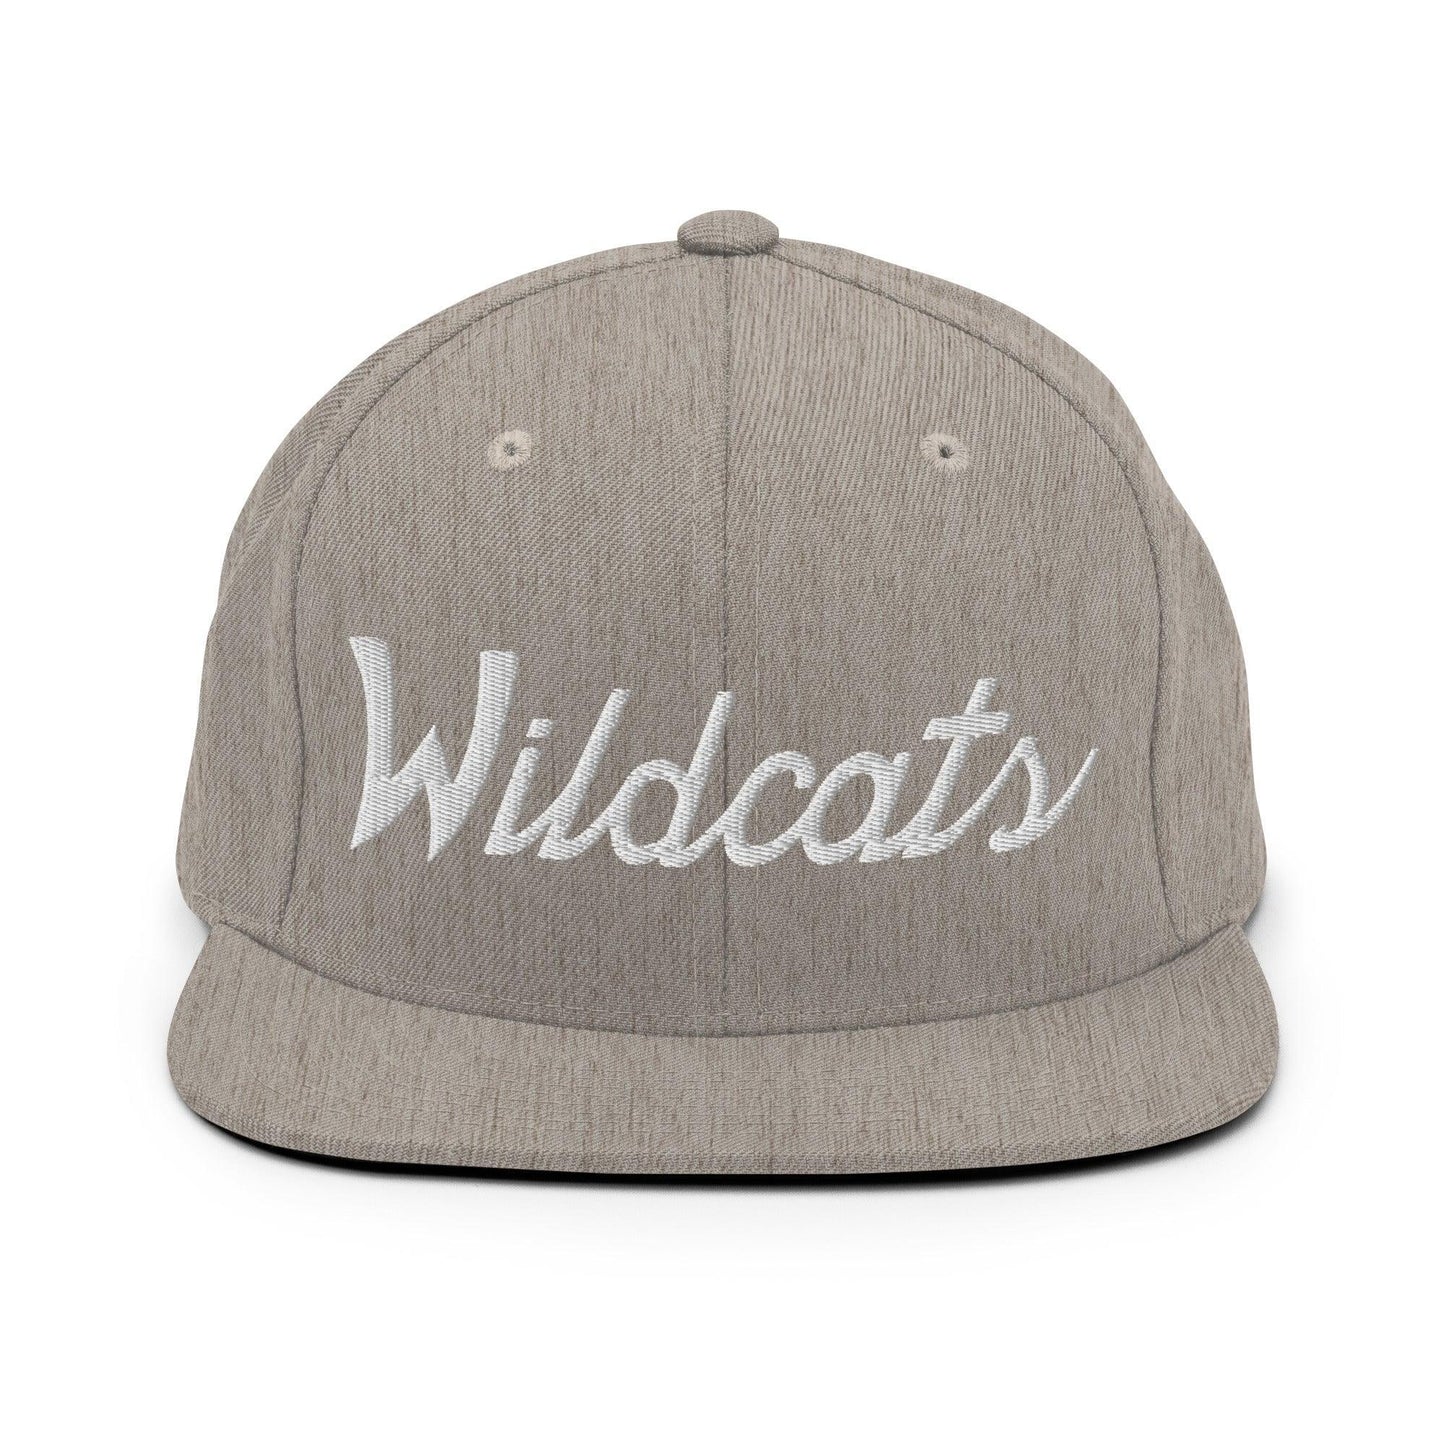 Wildcats School Mascot Script Snapback Hat Heather Grey